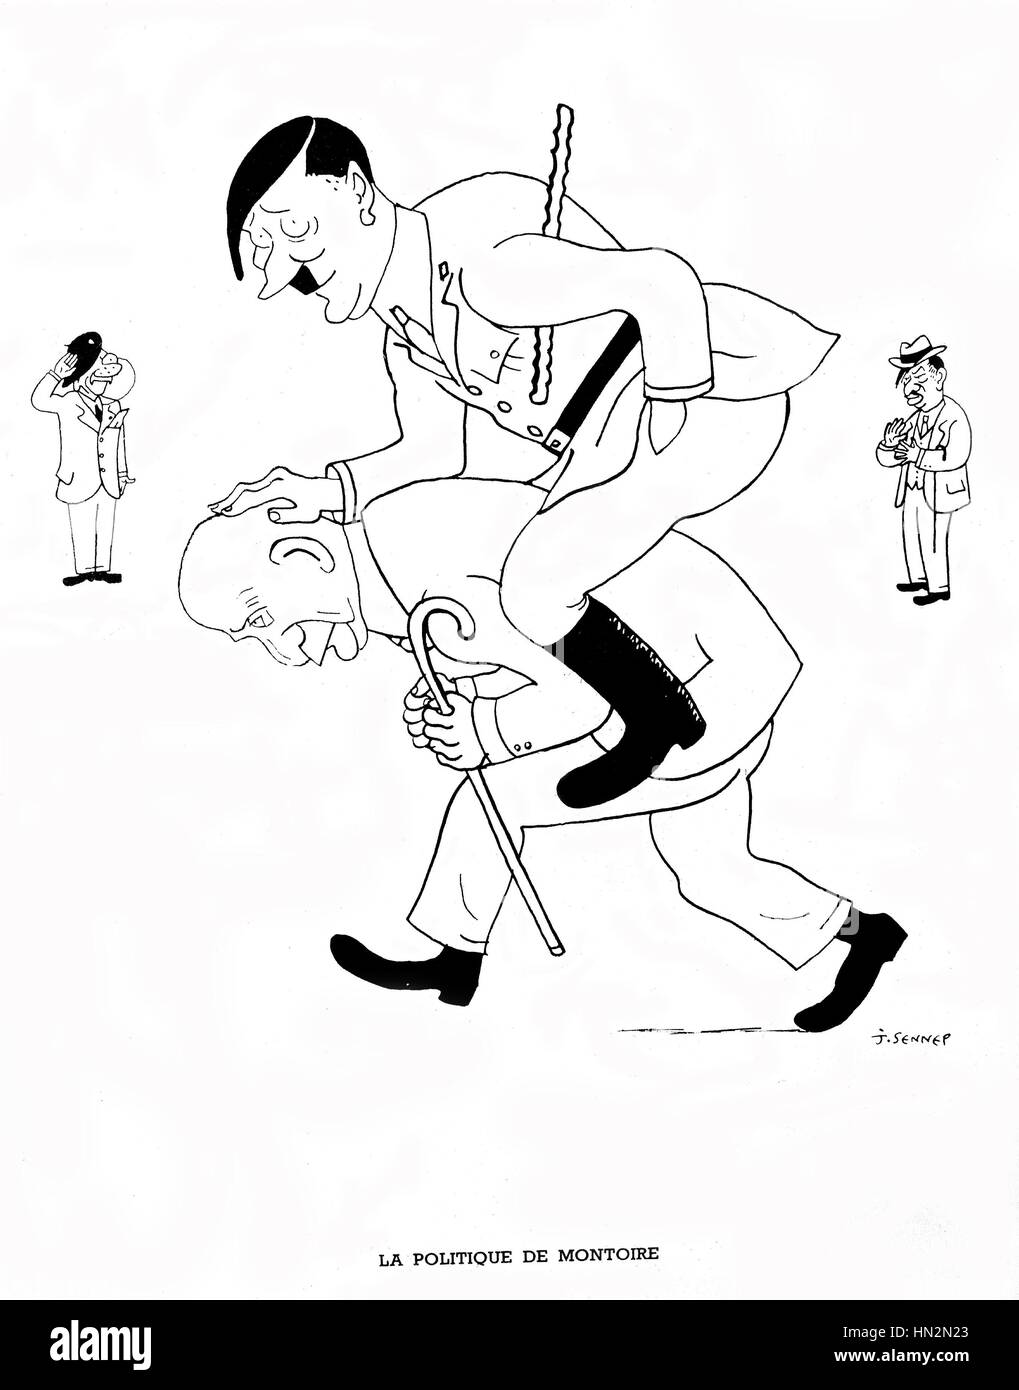 La caricatura da Sennep governo Vichy: 'L'Montoire politica dell' con Hitler e Petain Ottobre 24, 1940 Francia, la seconda guerra mondiale la guerra Foto Stock